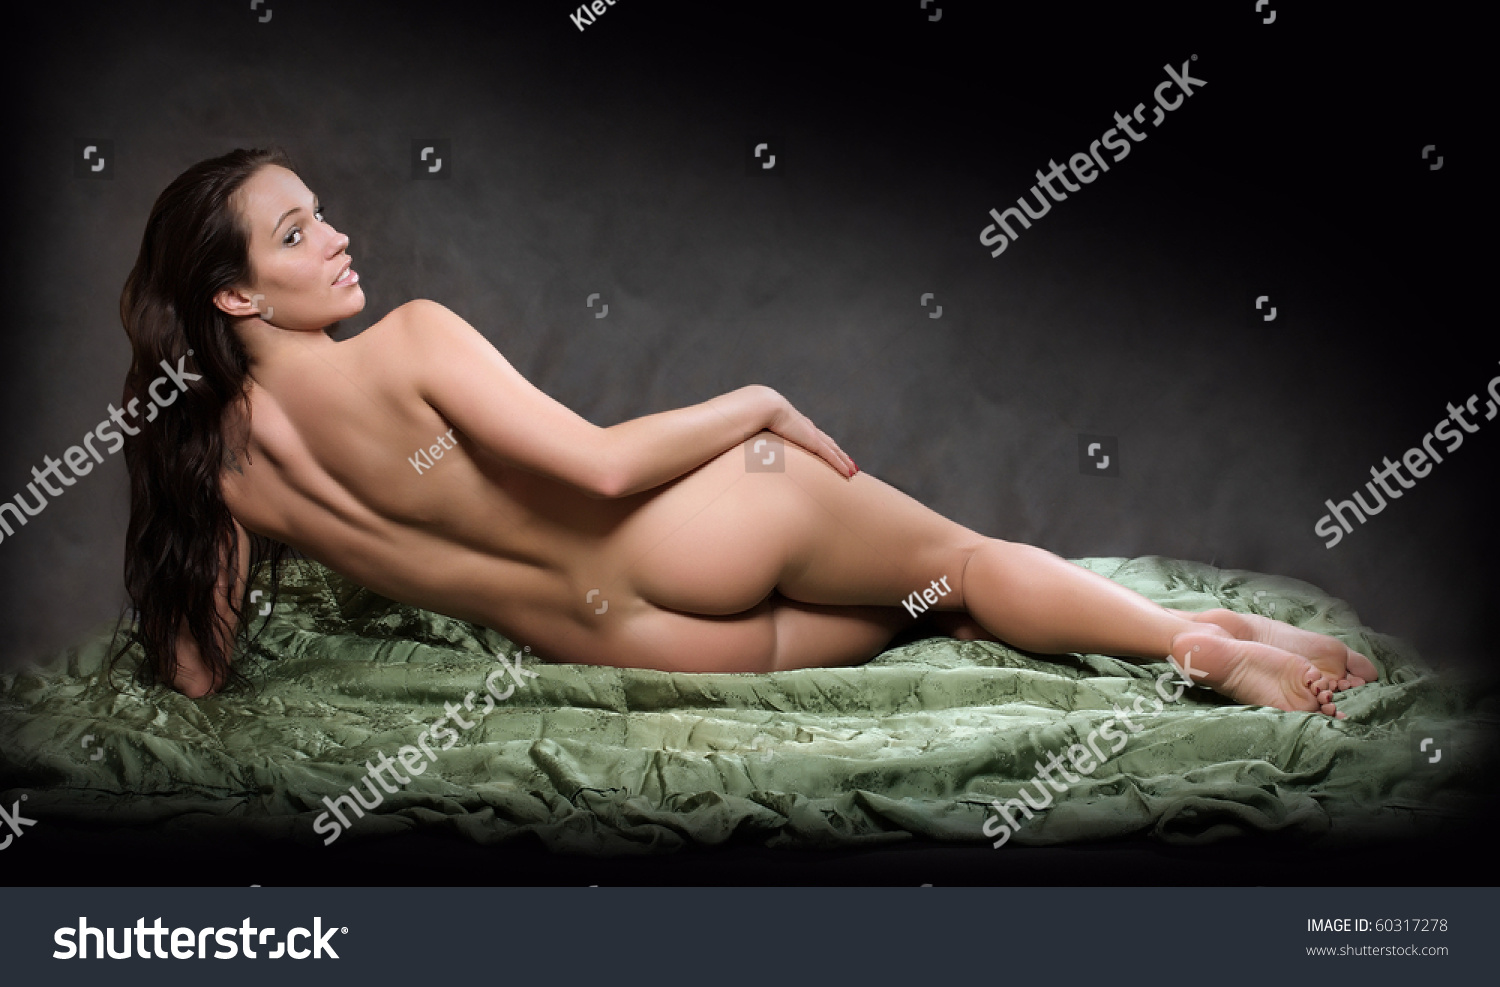 Woman Posing Nude 68